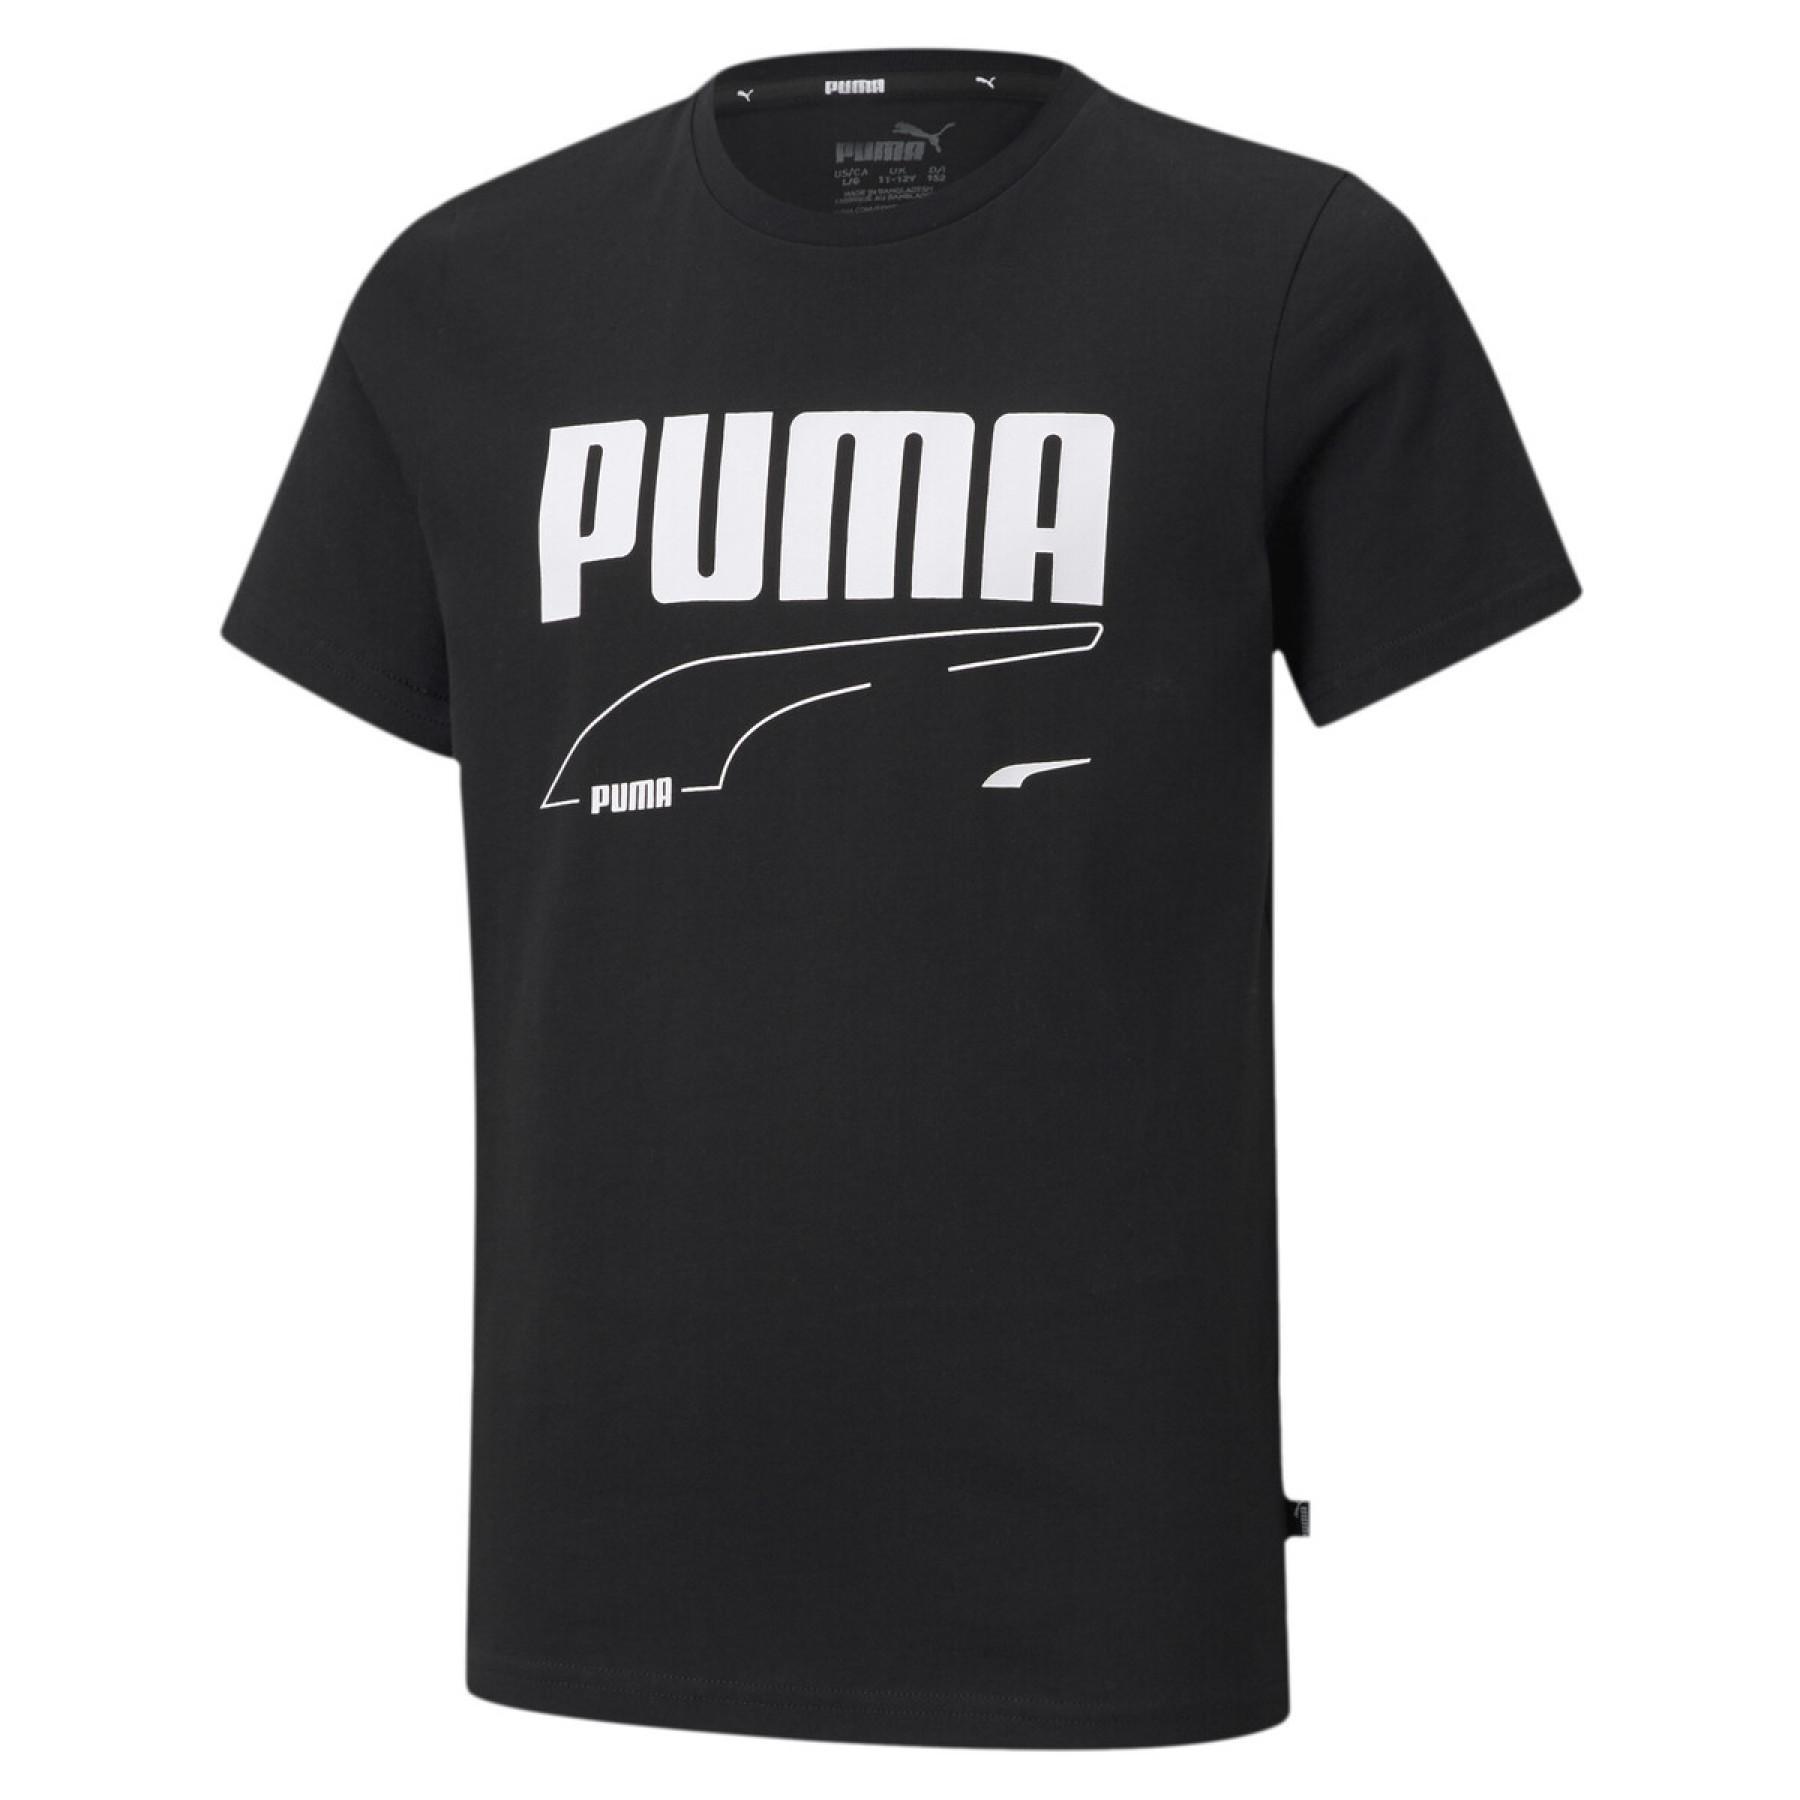 Kinder-T-shirt Puma Rebel B